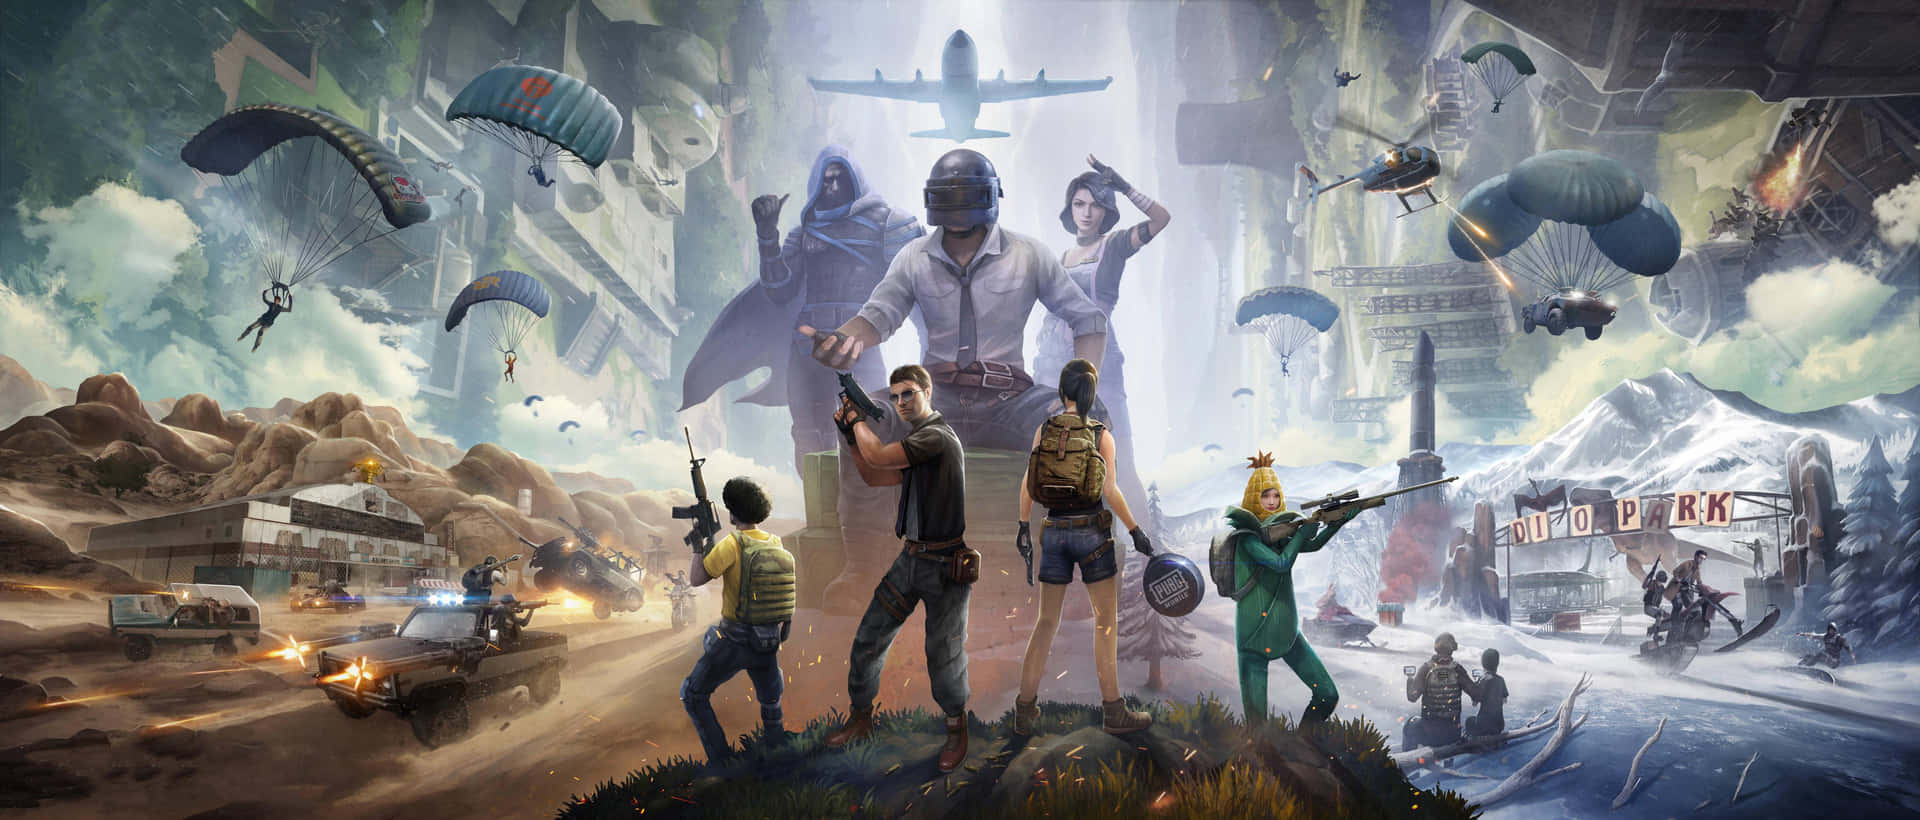 En plakat til et spil med mennesker i baggrunden